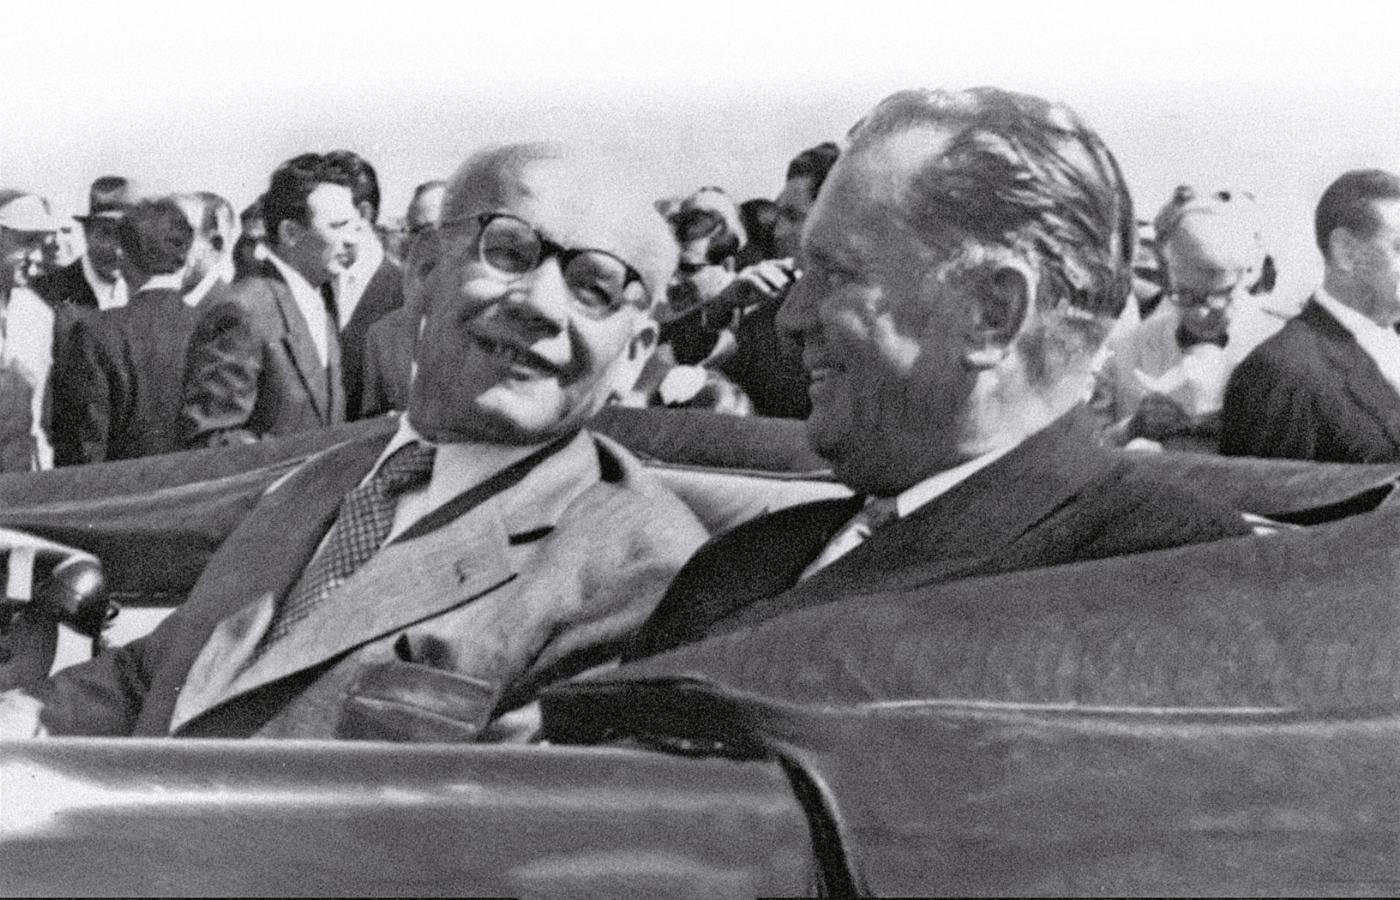 Ocieplenie polsko-jugosłowiańskie: nowy pierwszy sekretarz PZPR Władysław Gomułka z prezydentem Jugosławii Josipem Broz Titą podczas wizyty polskiego przywódcy w Belgradzie w 1957 r.